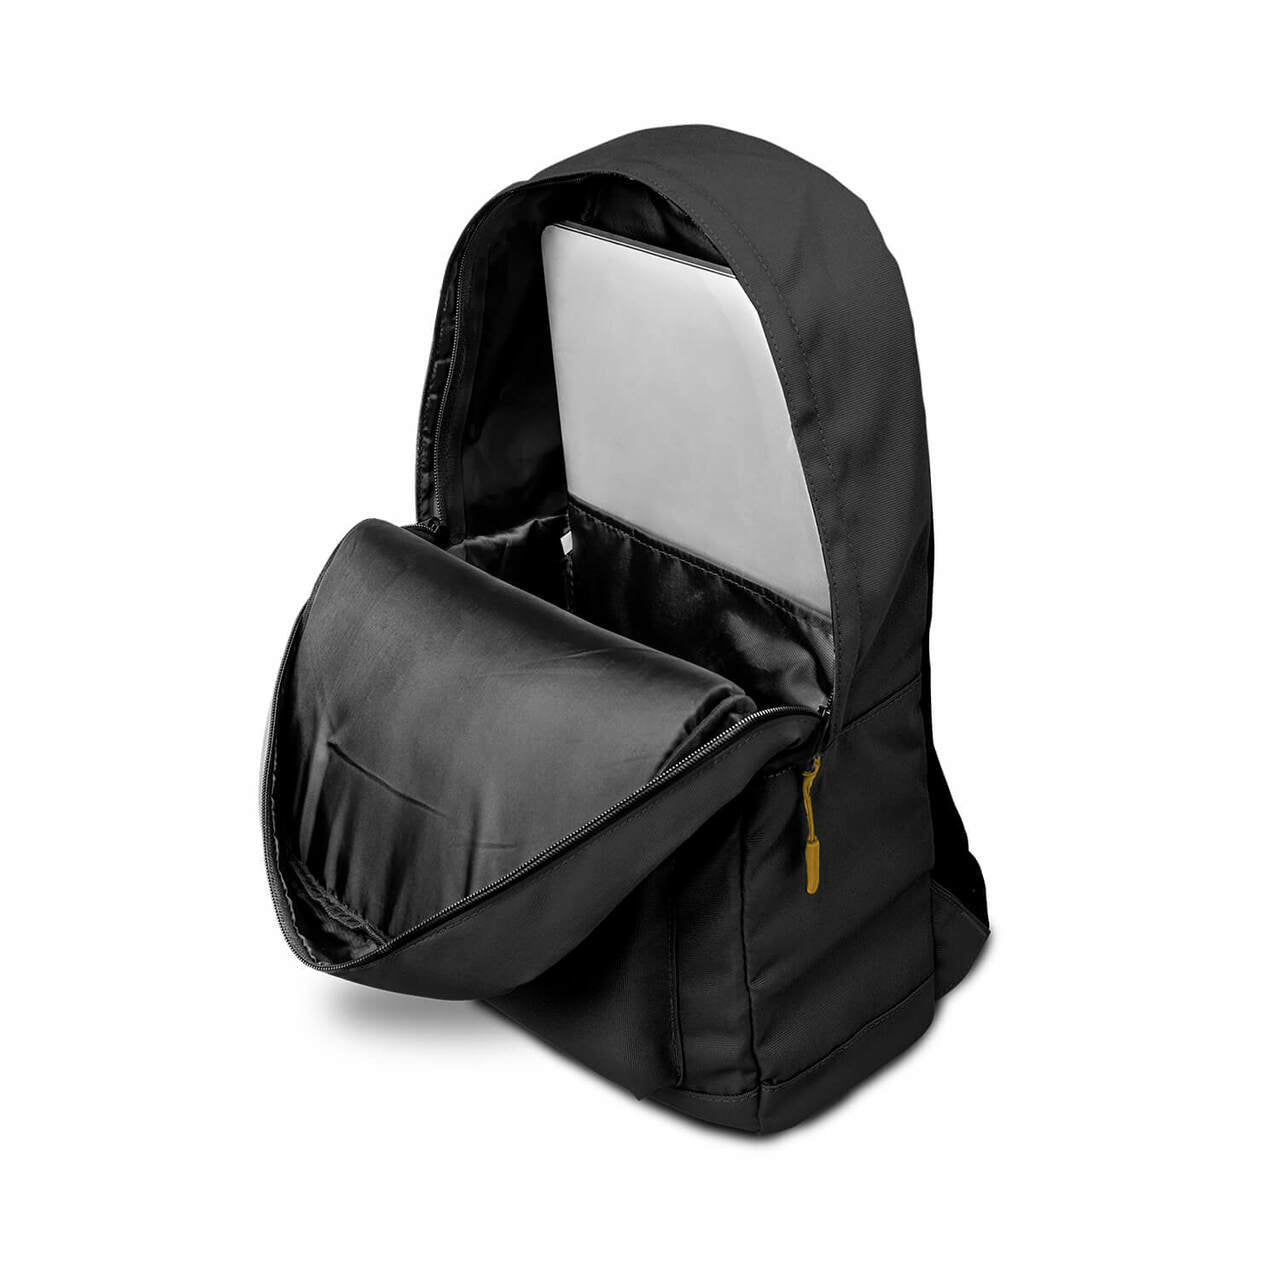 UCLA Bruins Campus Laptop Backpack- Black